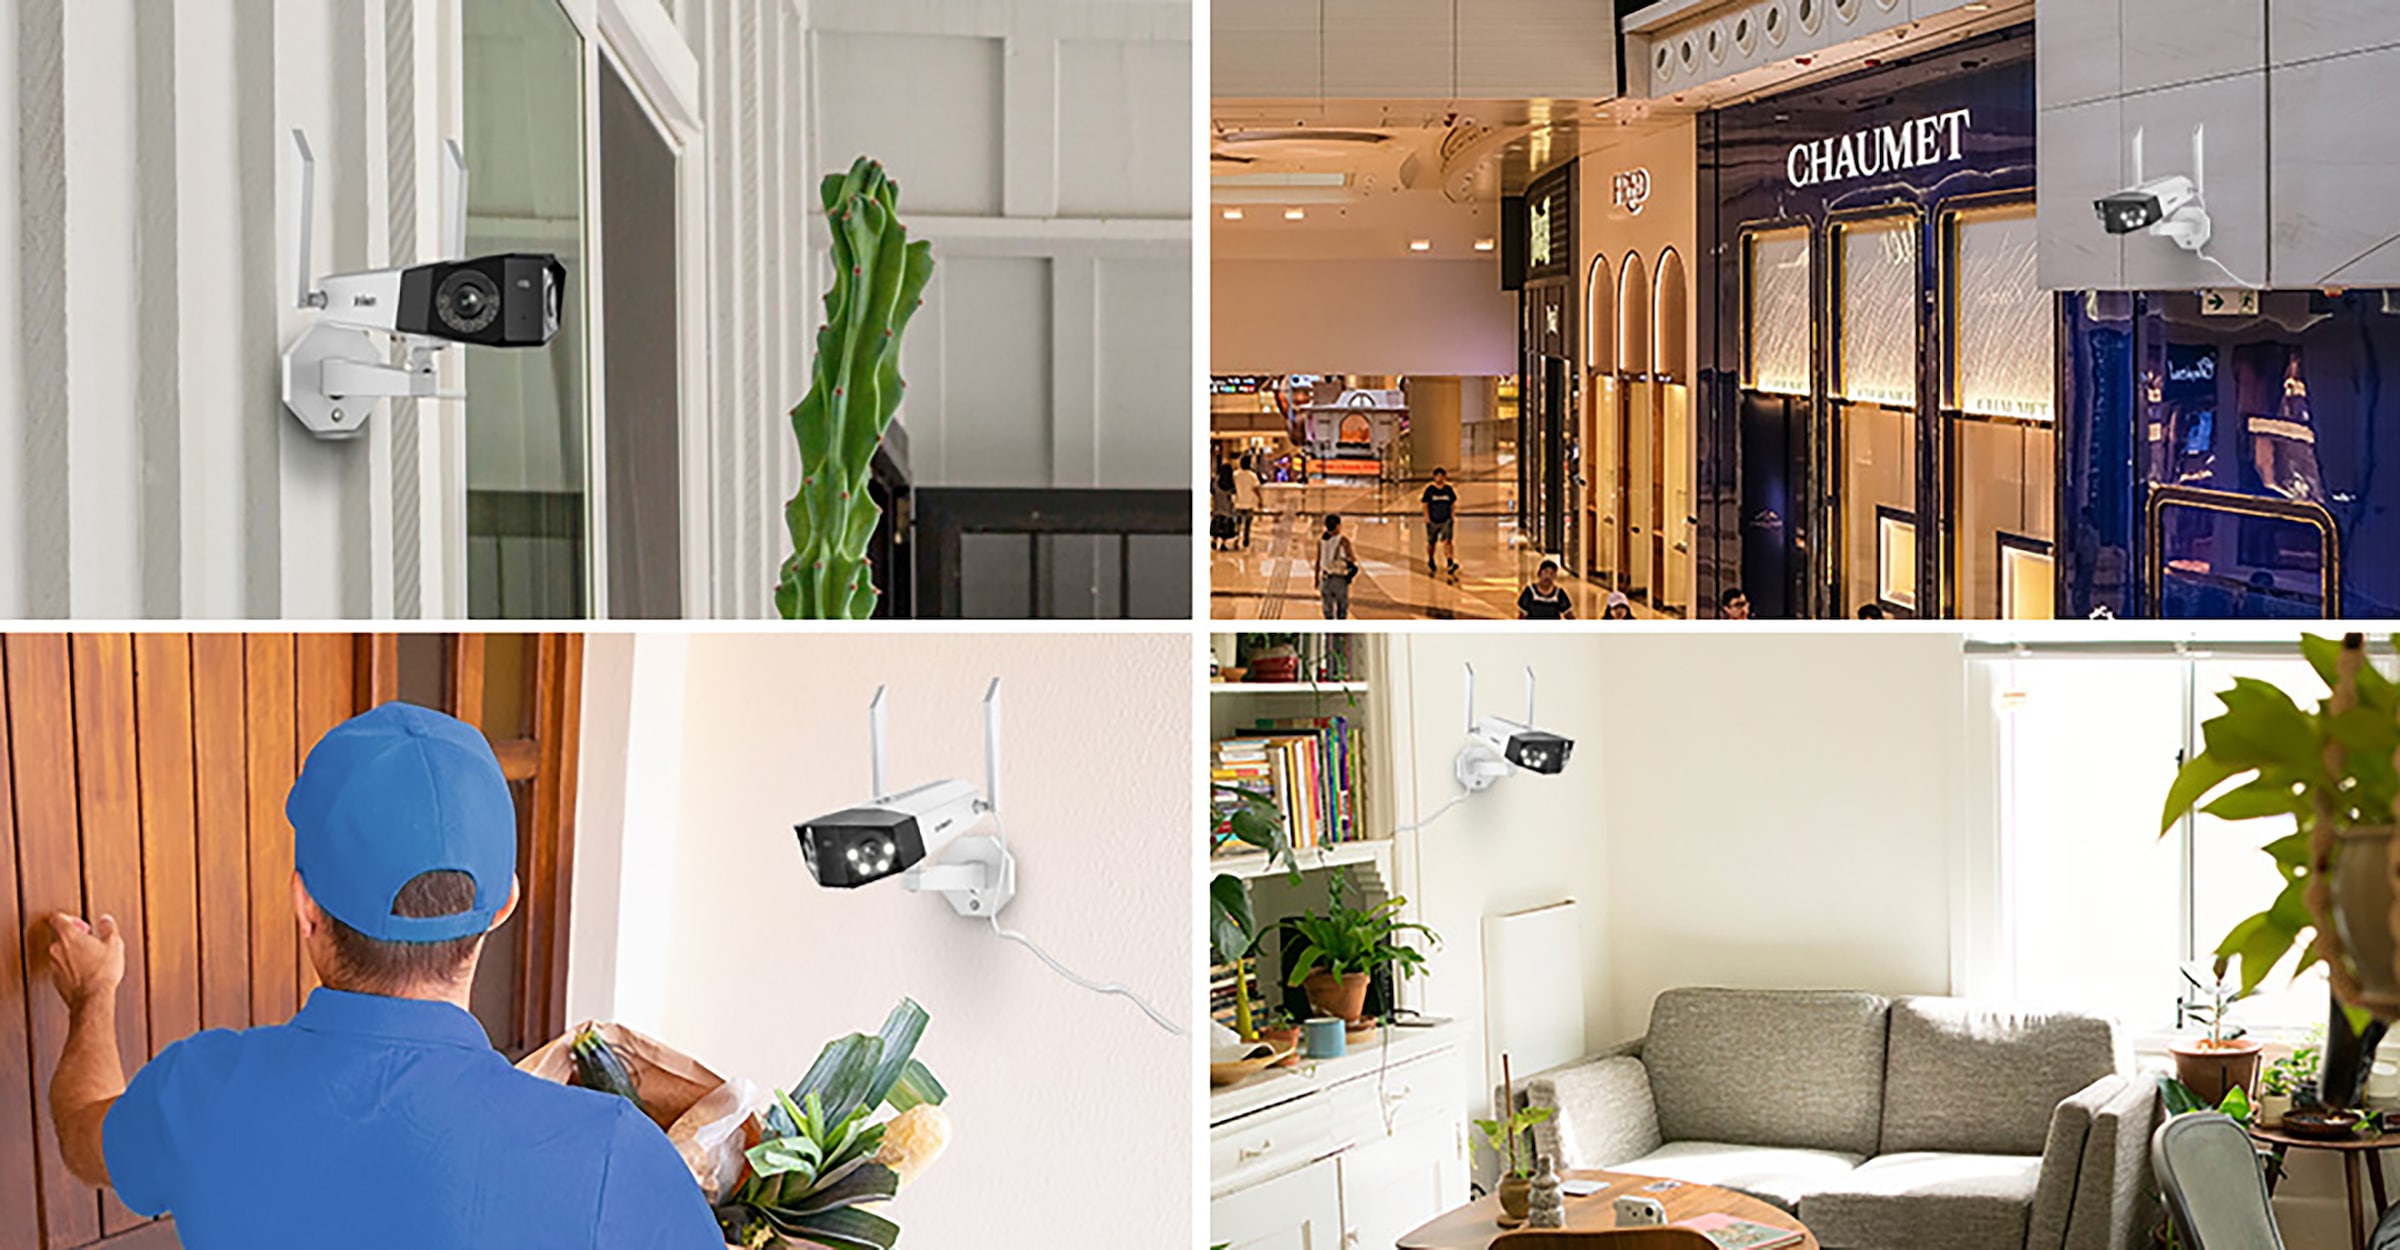 Reolink Überwachungskamera »Duo Series W730«, Außenbereich-Innenbereich, 4K, Panorama (Dual-Objektiv), Spotlight, Farbnachtsicht 30 Meter